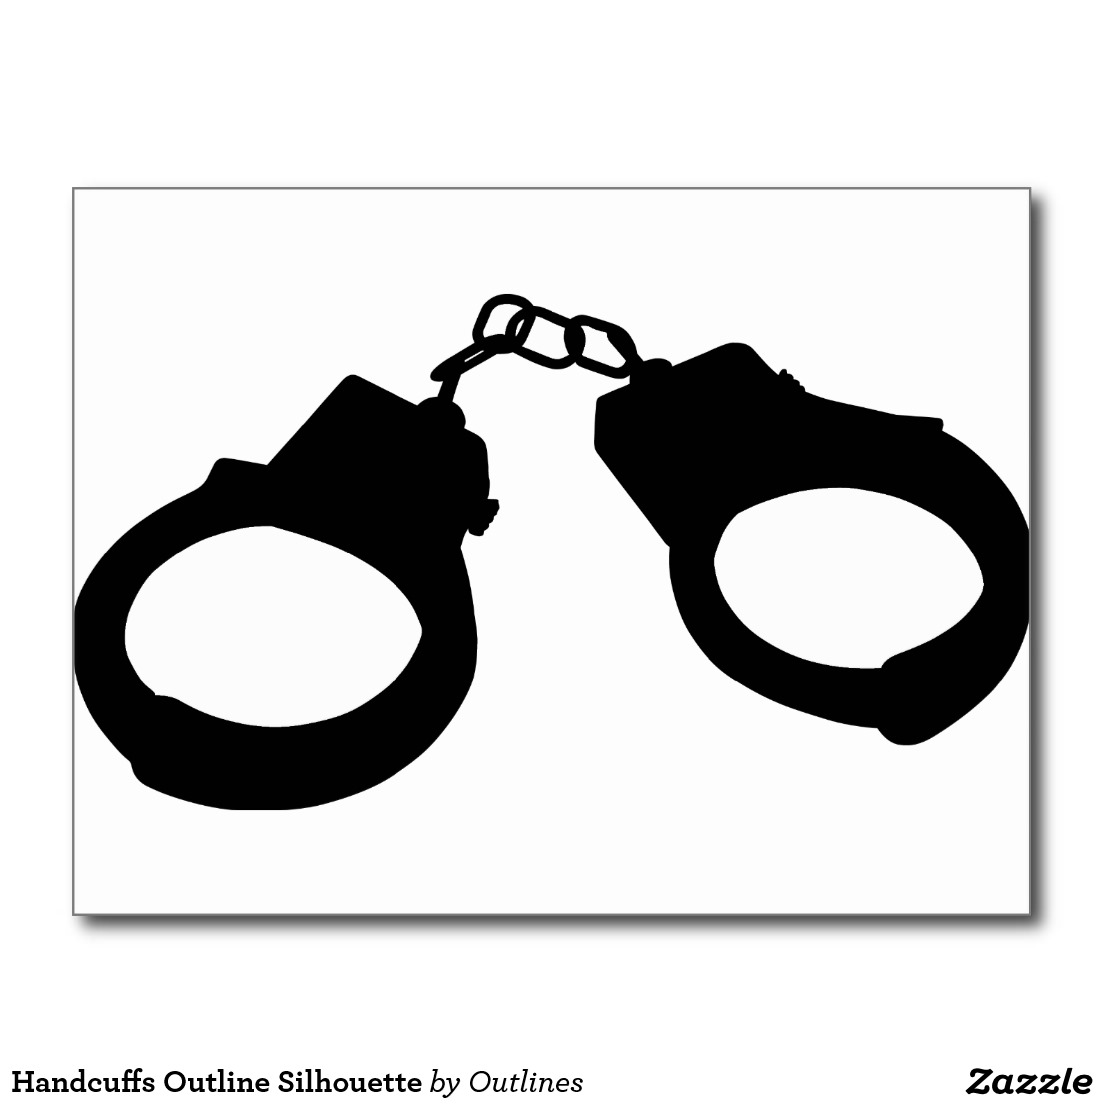 Handcuffs Outline Silhouette Postcard | Zazzle